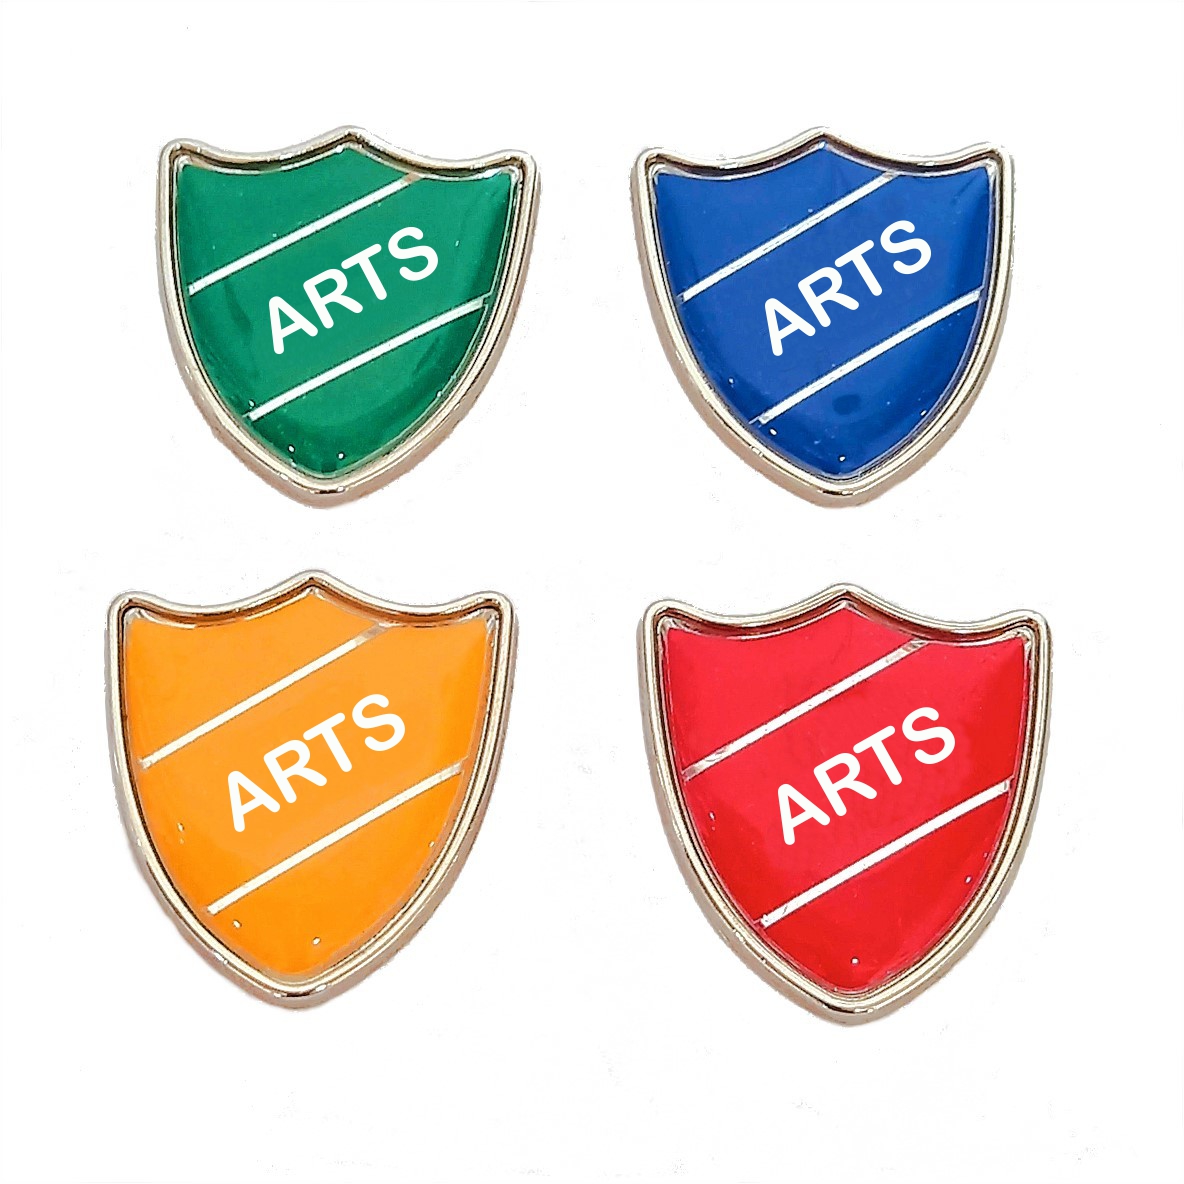 ARTS shield badge